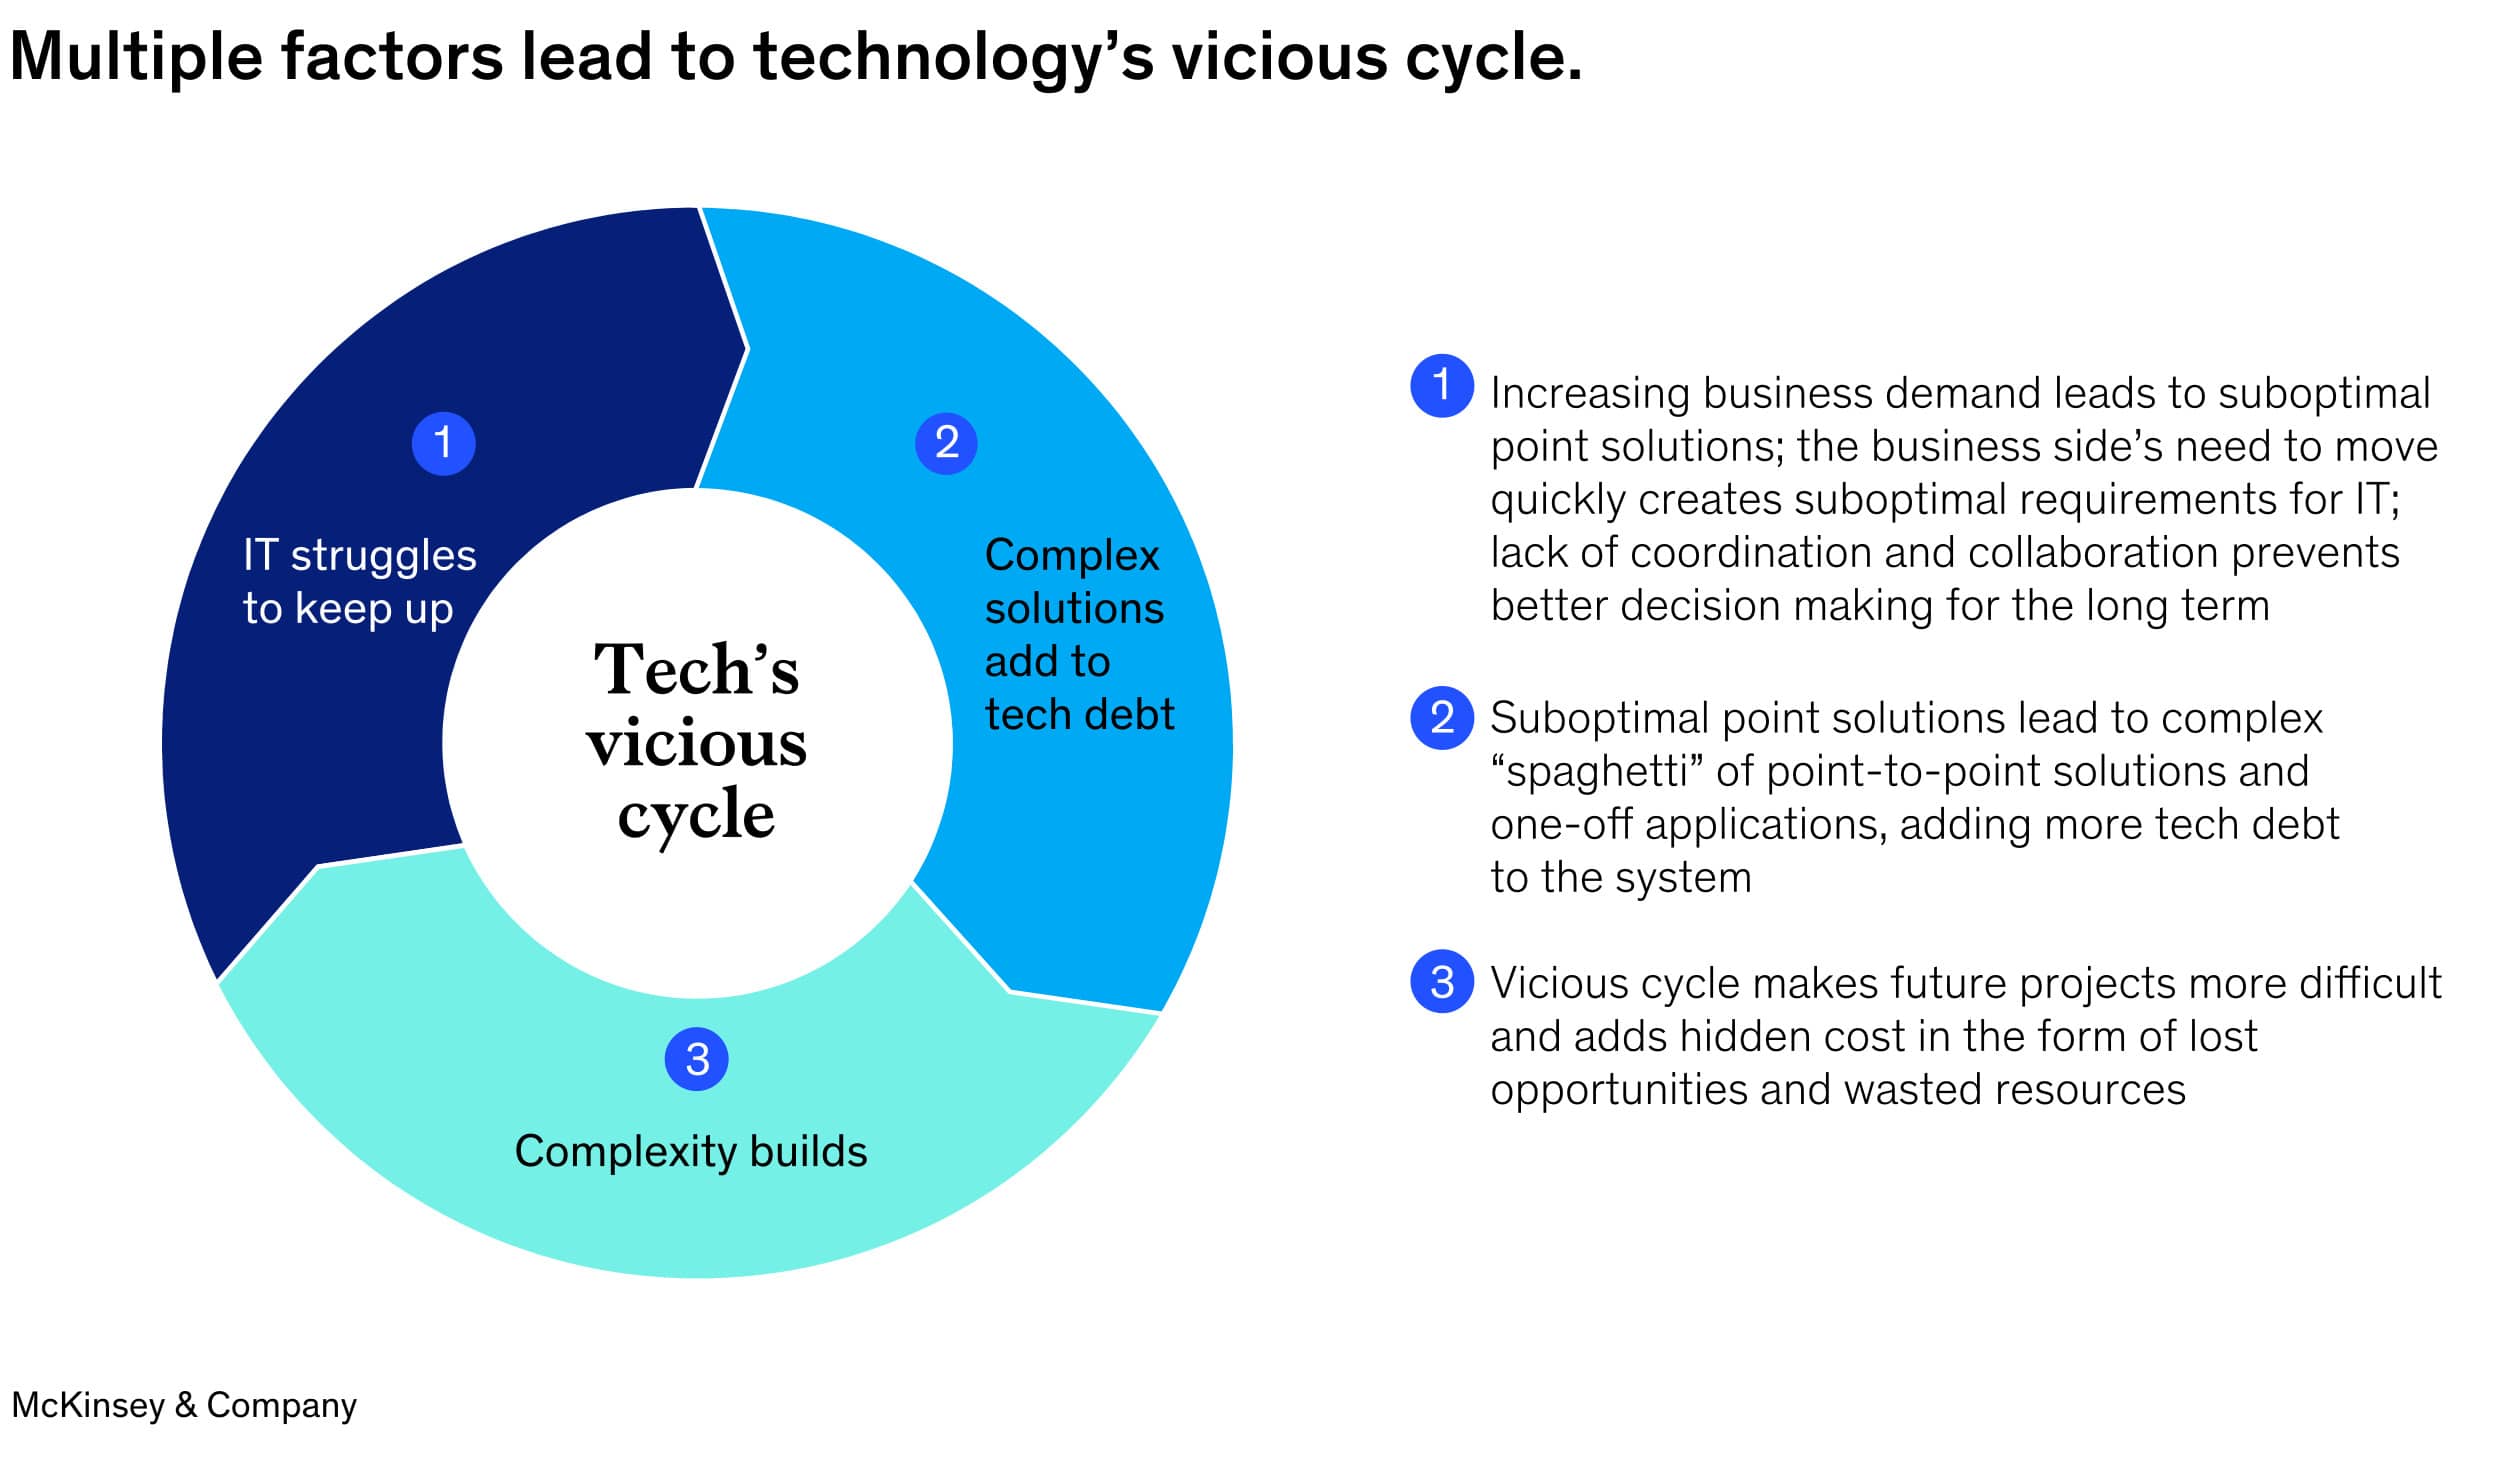 Tech Debt's Vicious Cycle